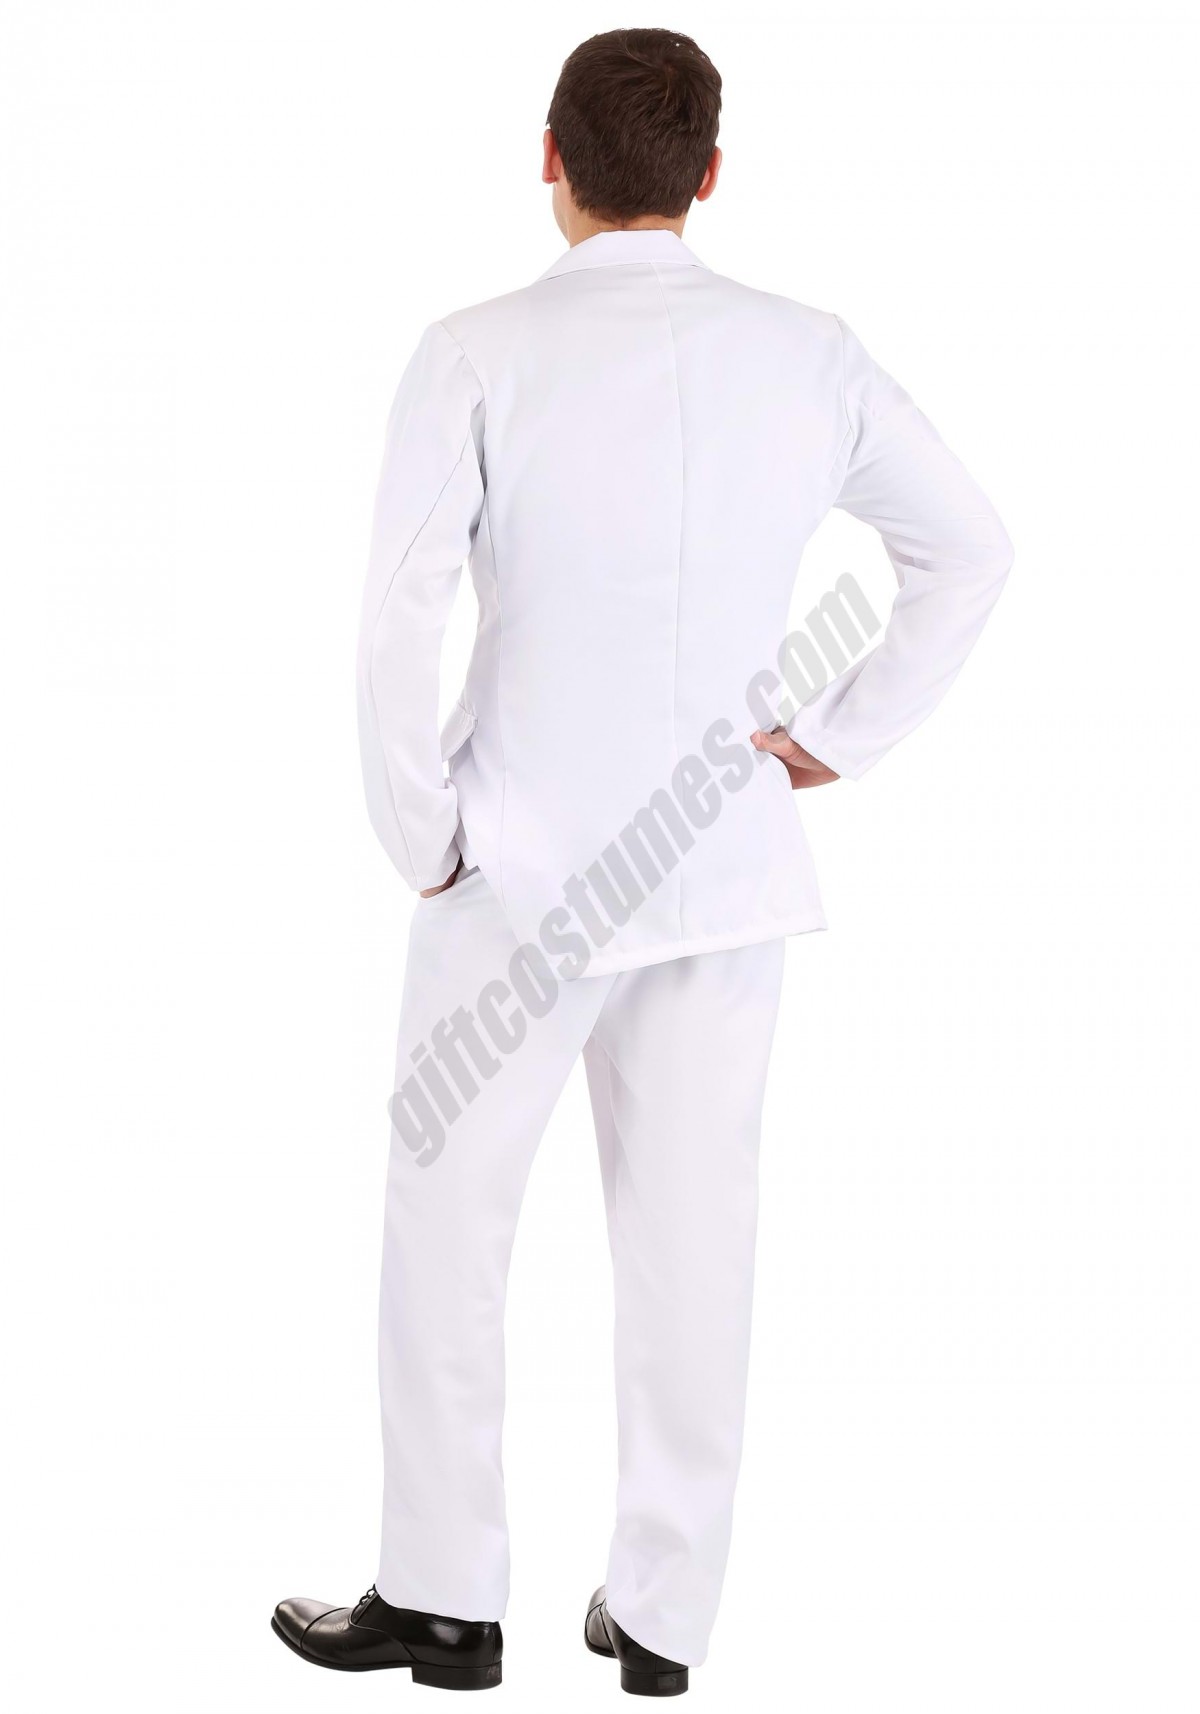 Men's White Suit Costume - -6